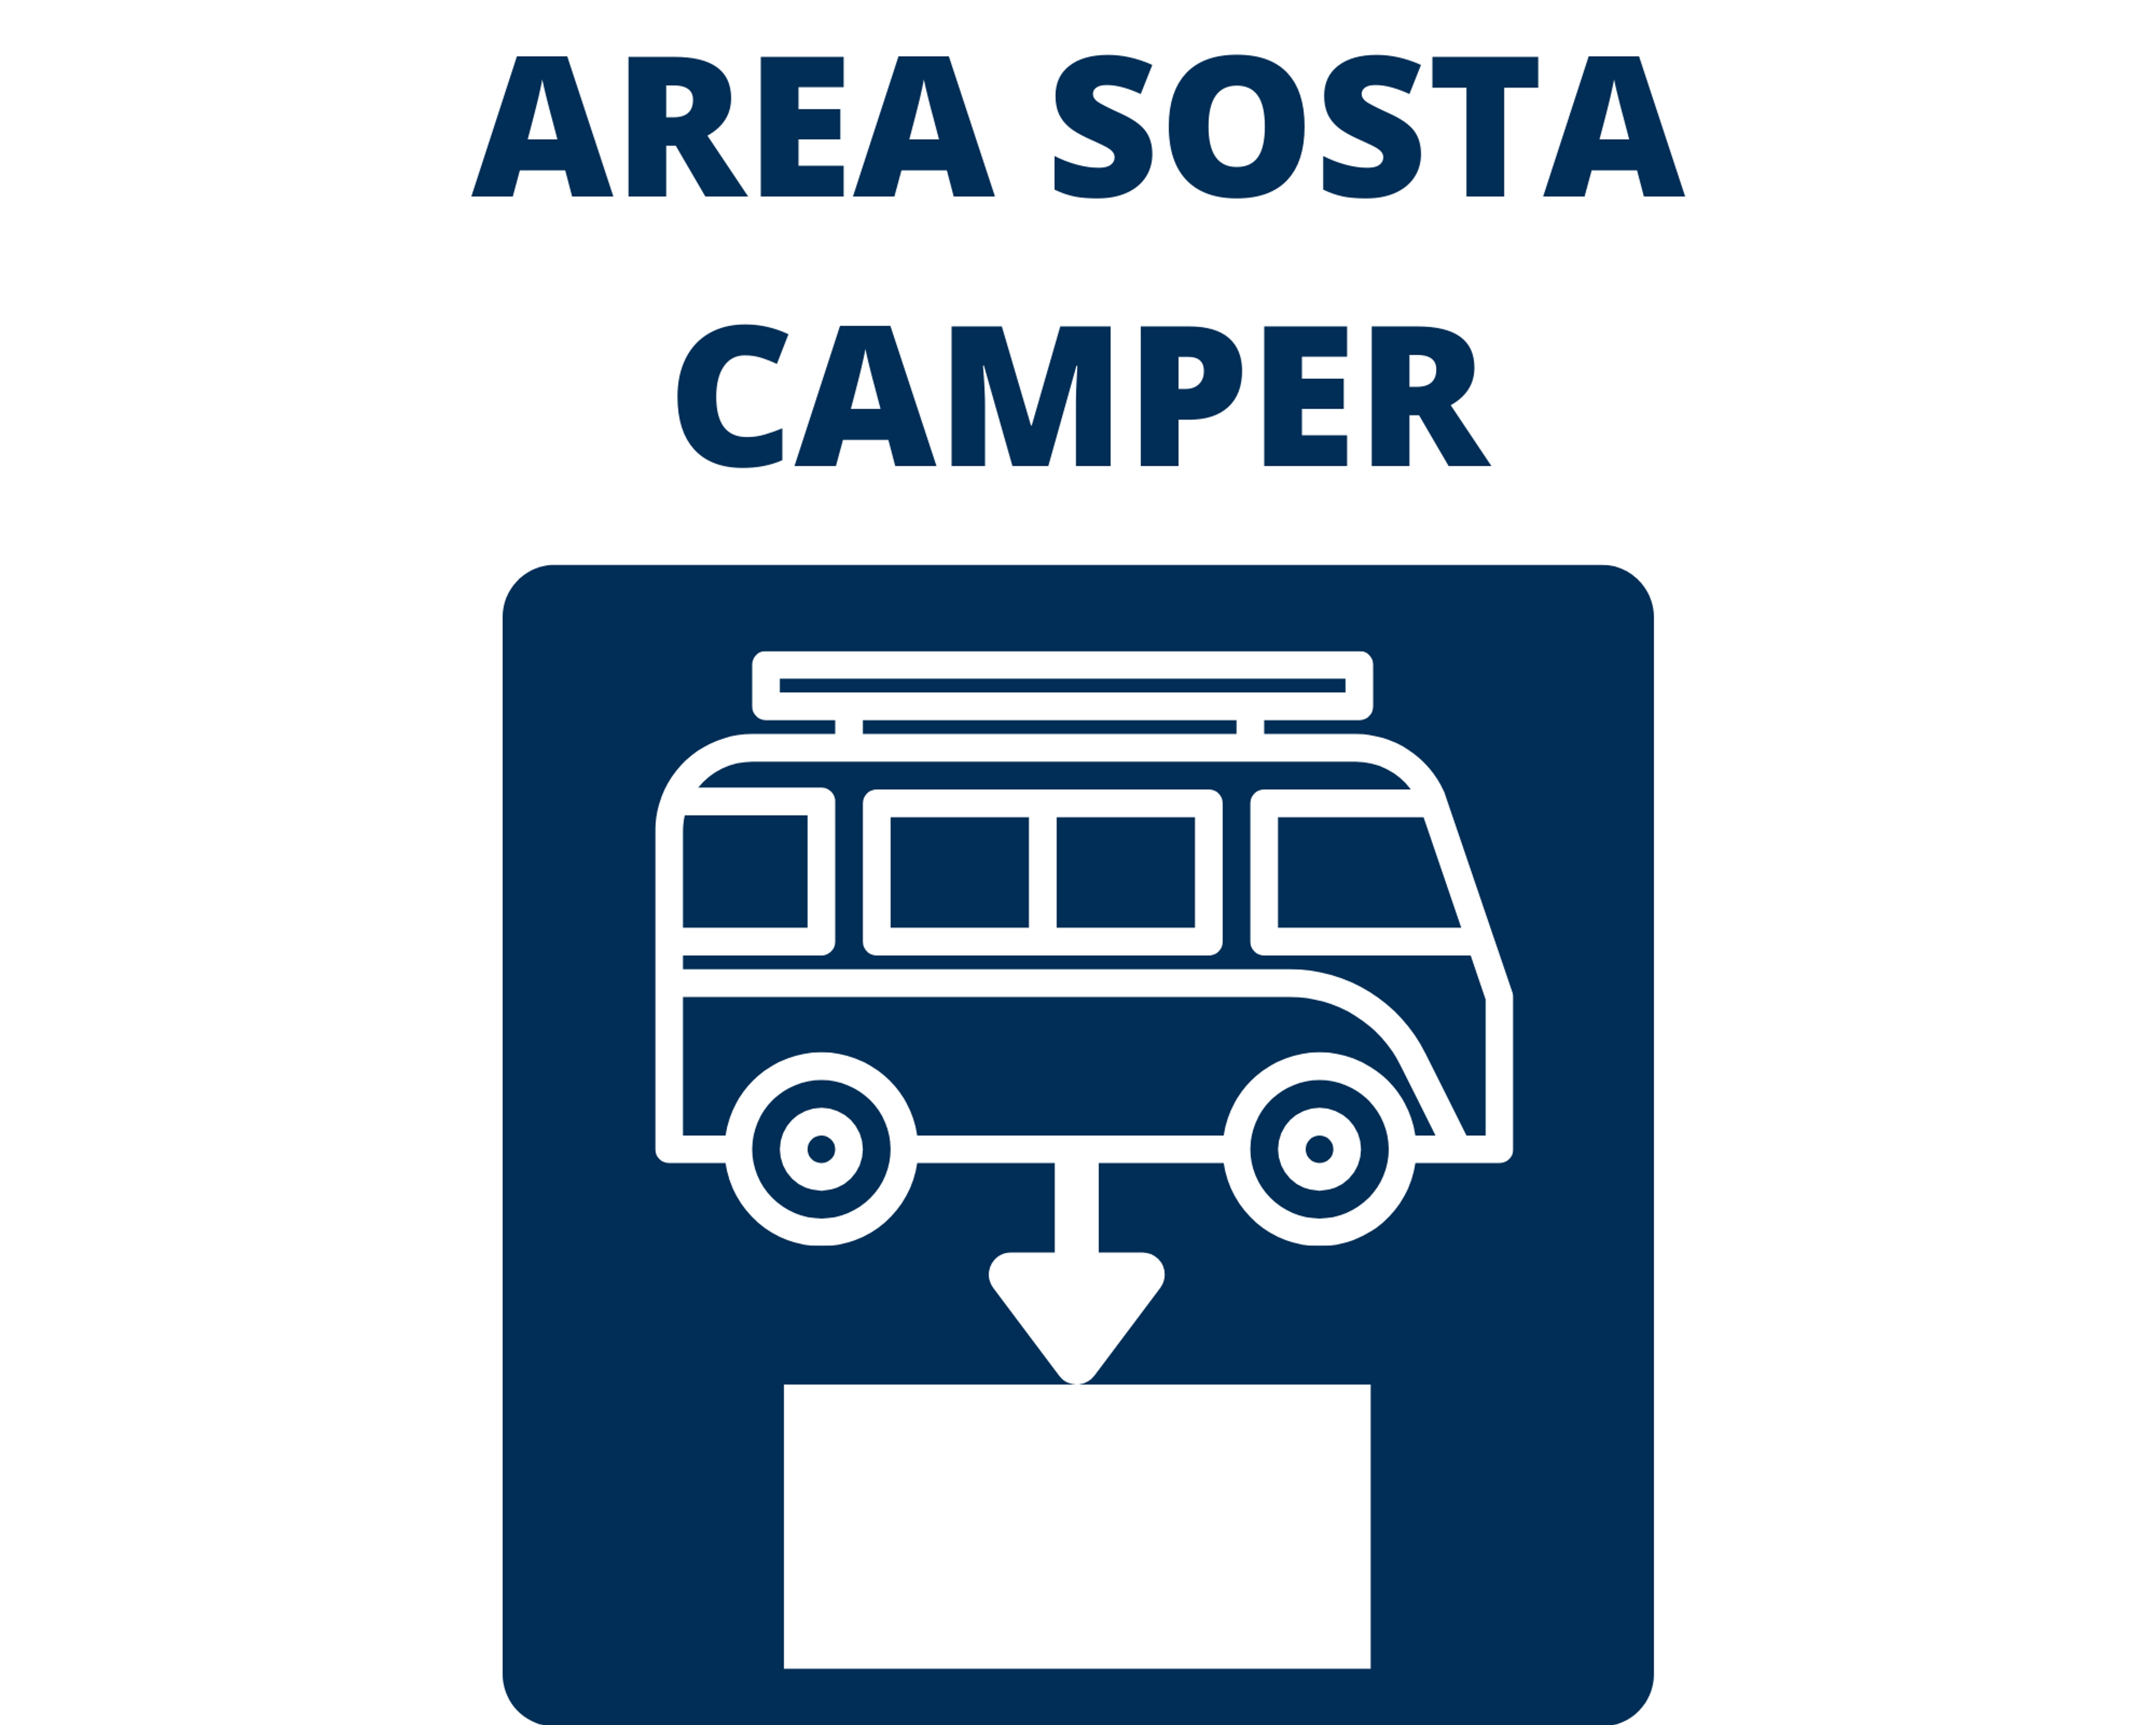 Diese Schild zeigt dir an welchen Orten Camping erlaubt ist